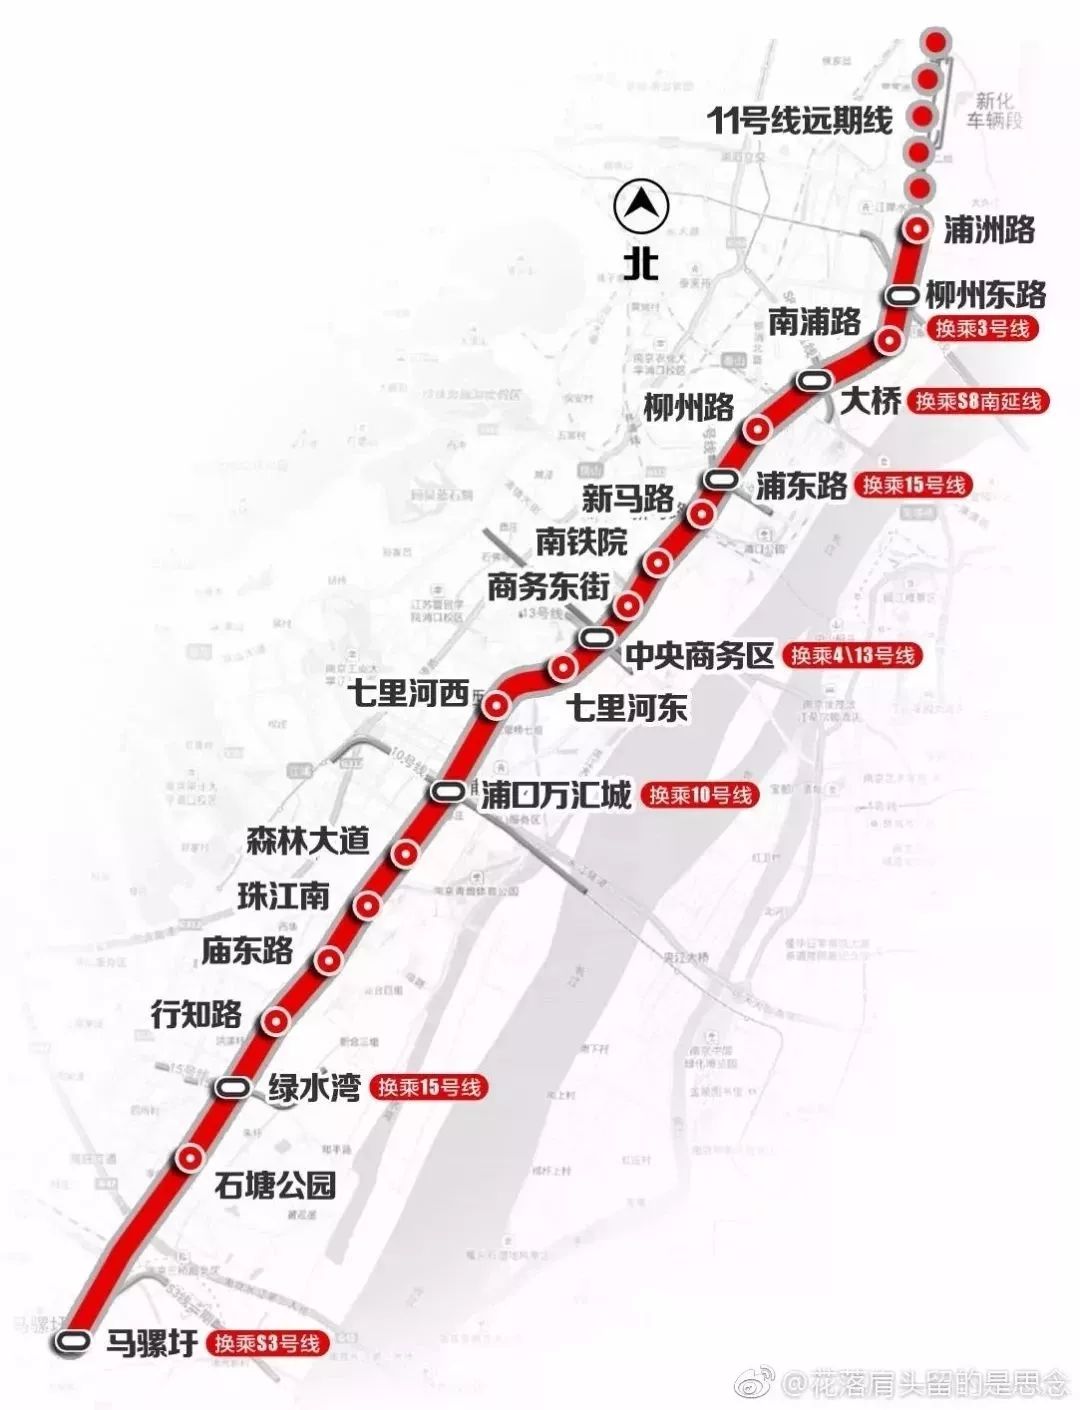 6月9日,乐居网友反馈上南宁轨道交通官网查找南宁第三轮地铁建设规划